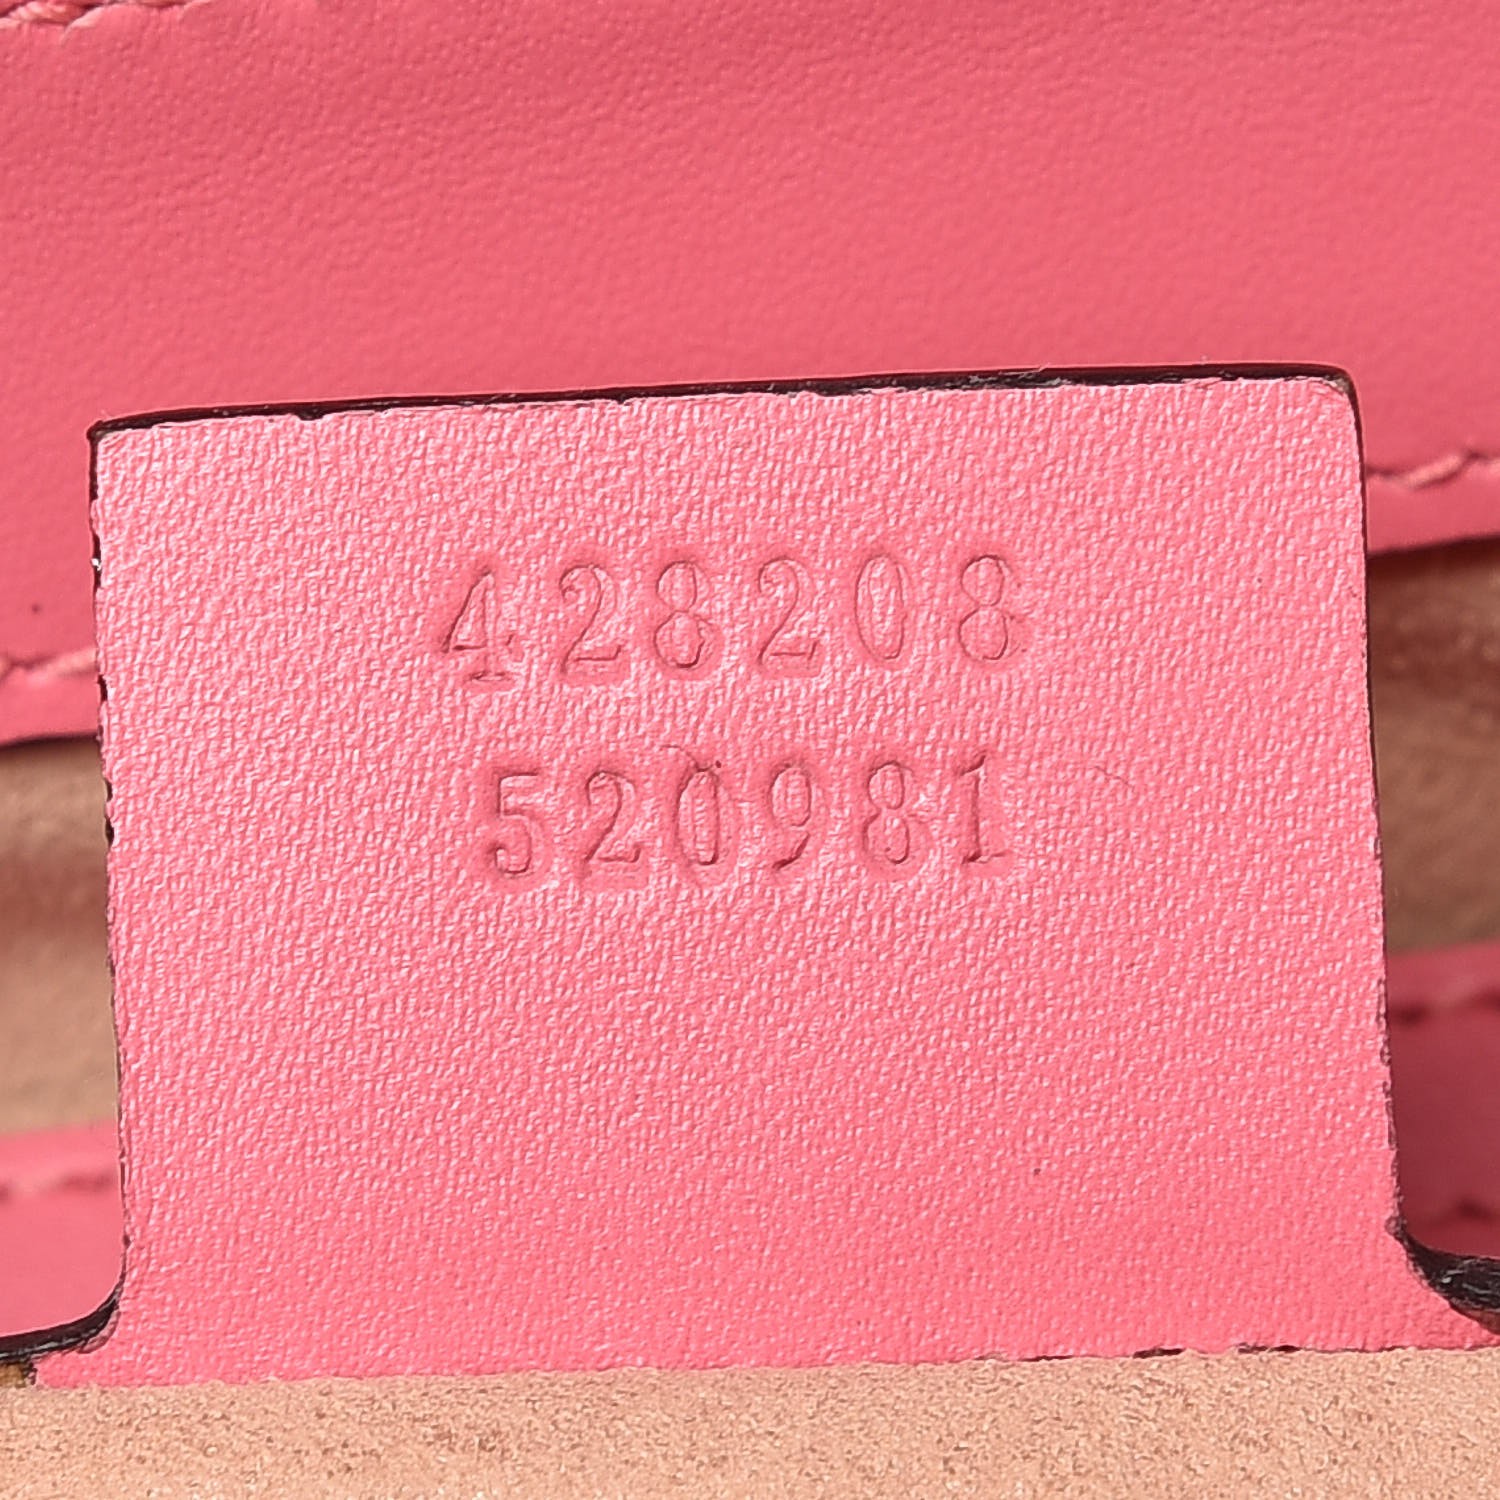 GUCCI Guccissima Medium Padlock Signature Top Handle Bag Pink 349304